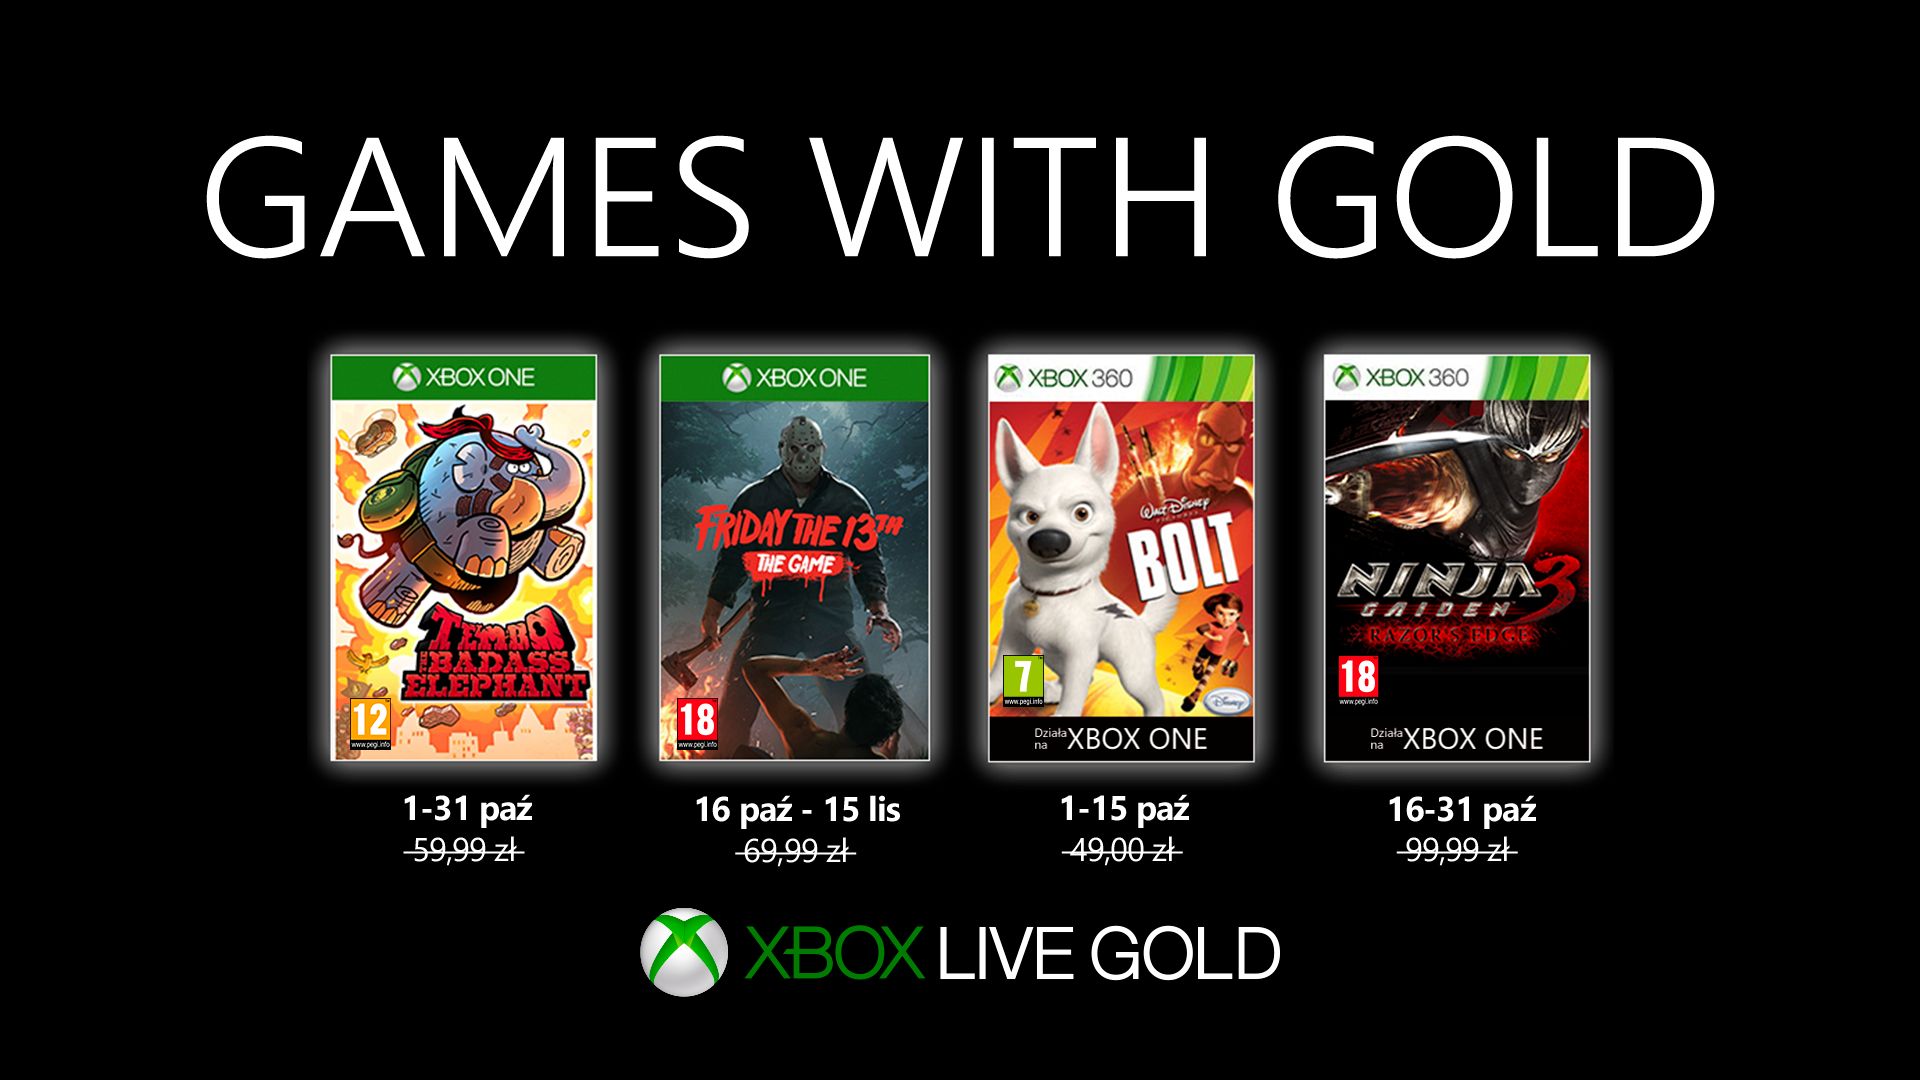 Volg ons Reis tarwe Xbox Live Gold: październikowa oferta gier w Games with Gold - WP Gry